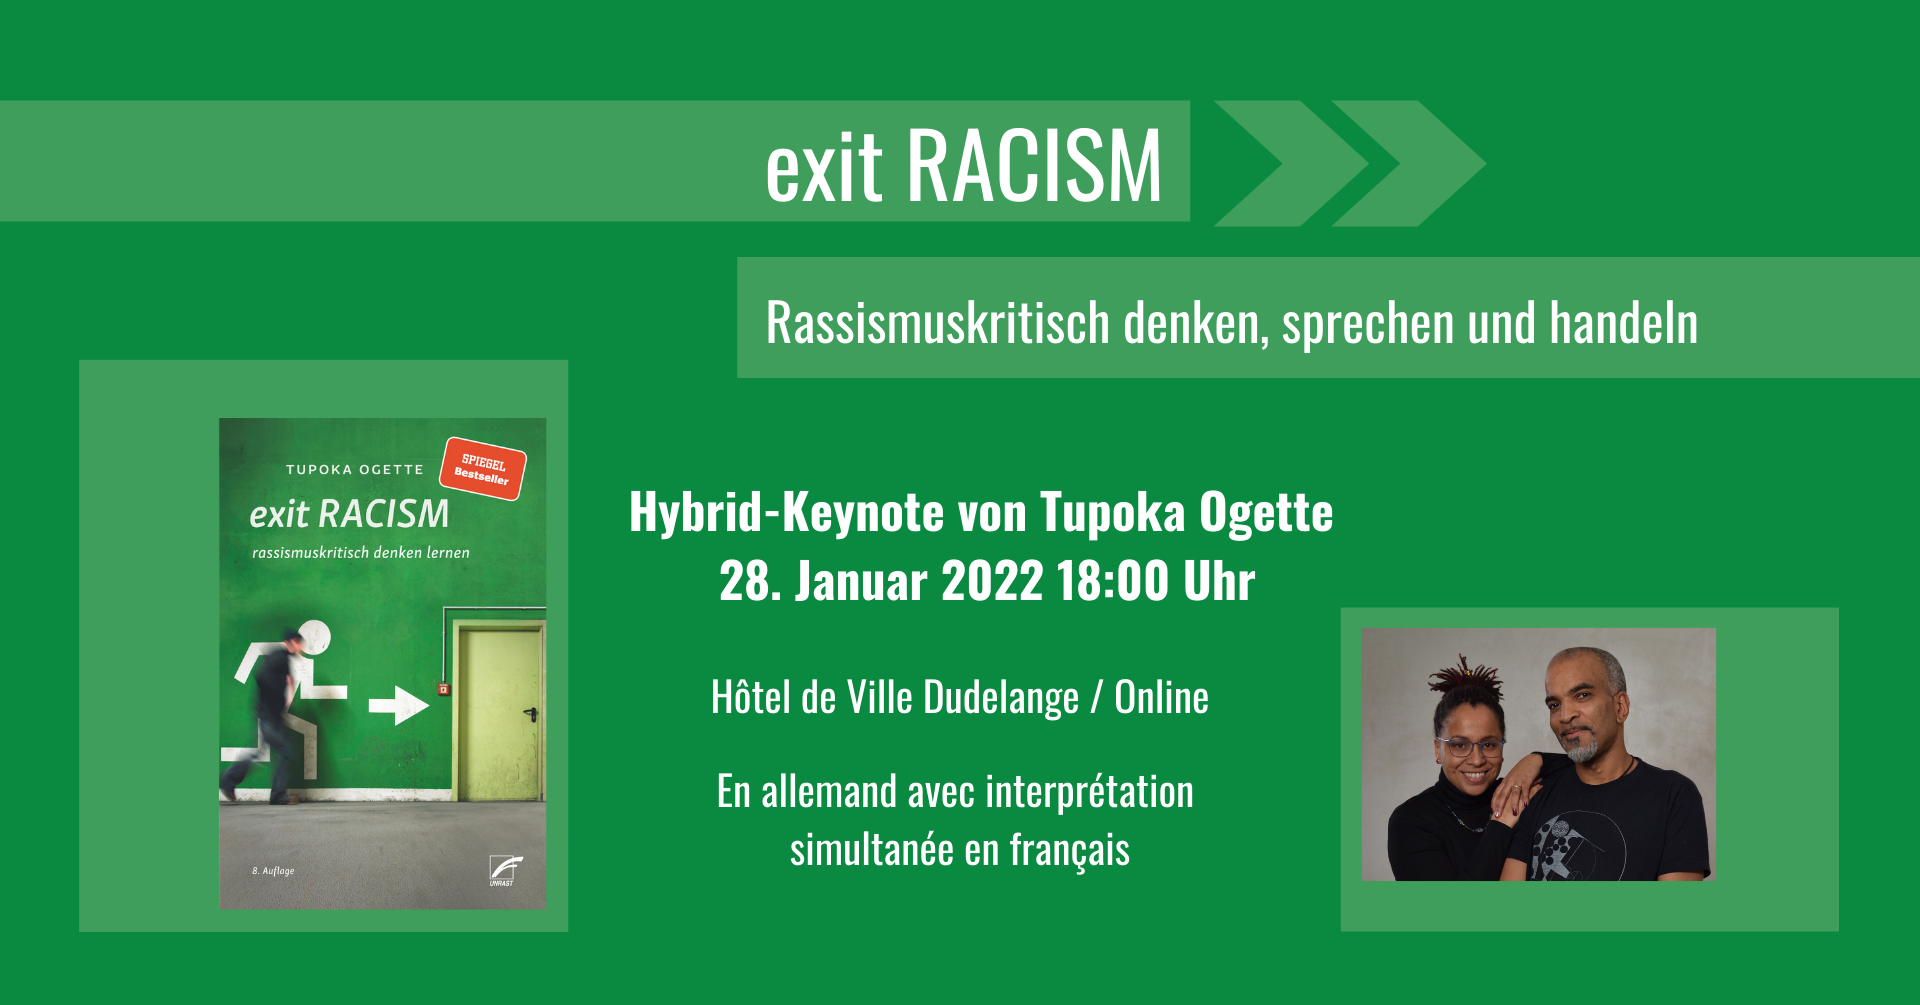 Exit Racism: Rassismuskritisch denken, sprechen und handeln